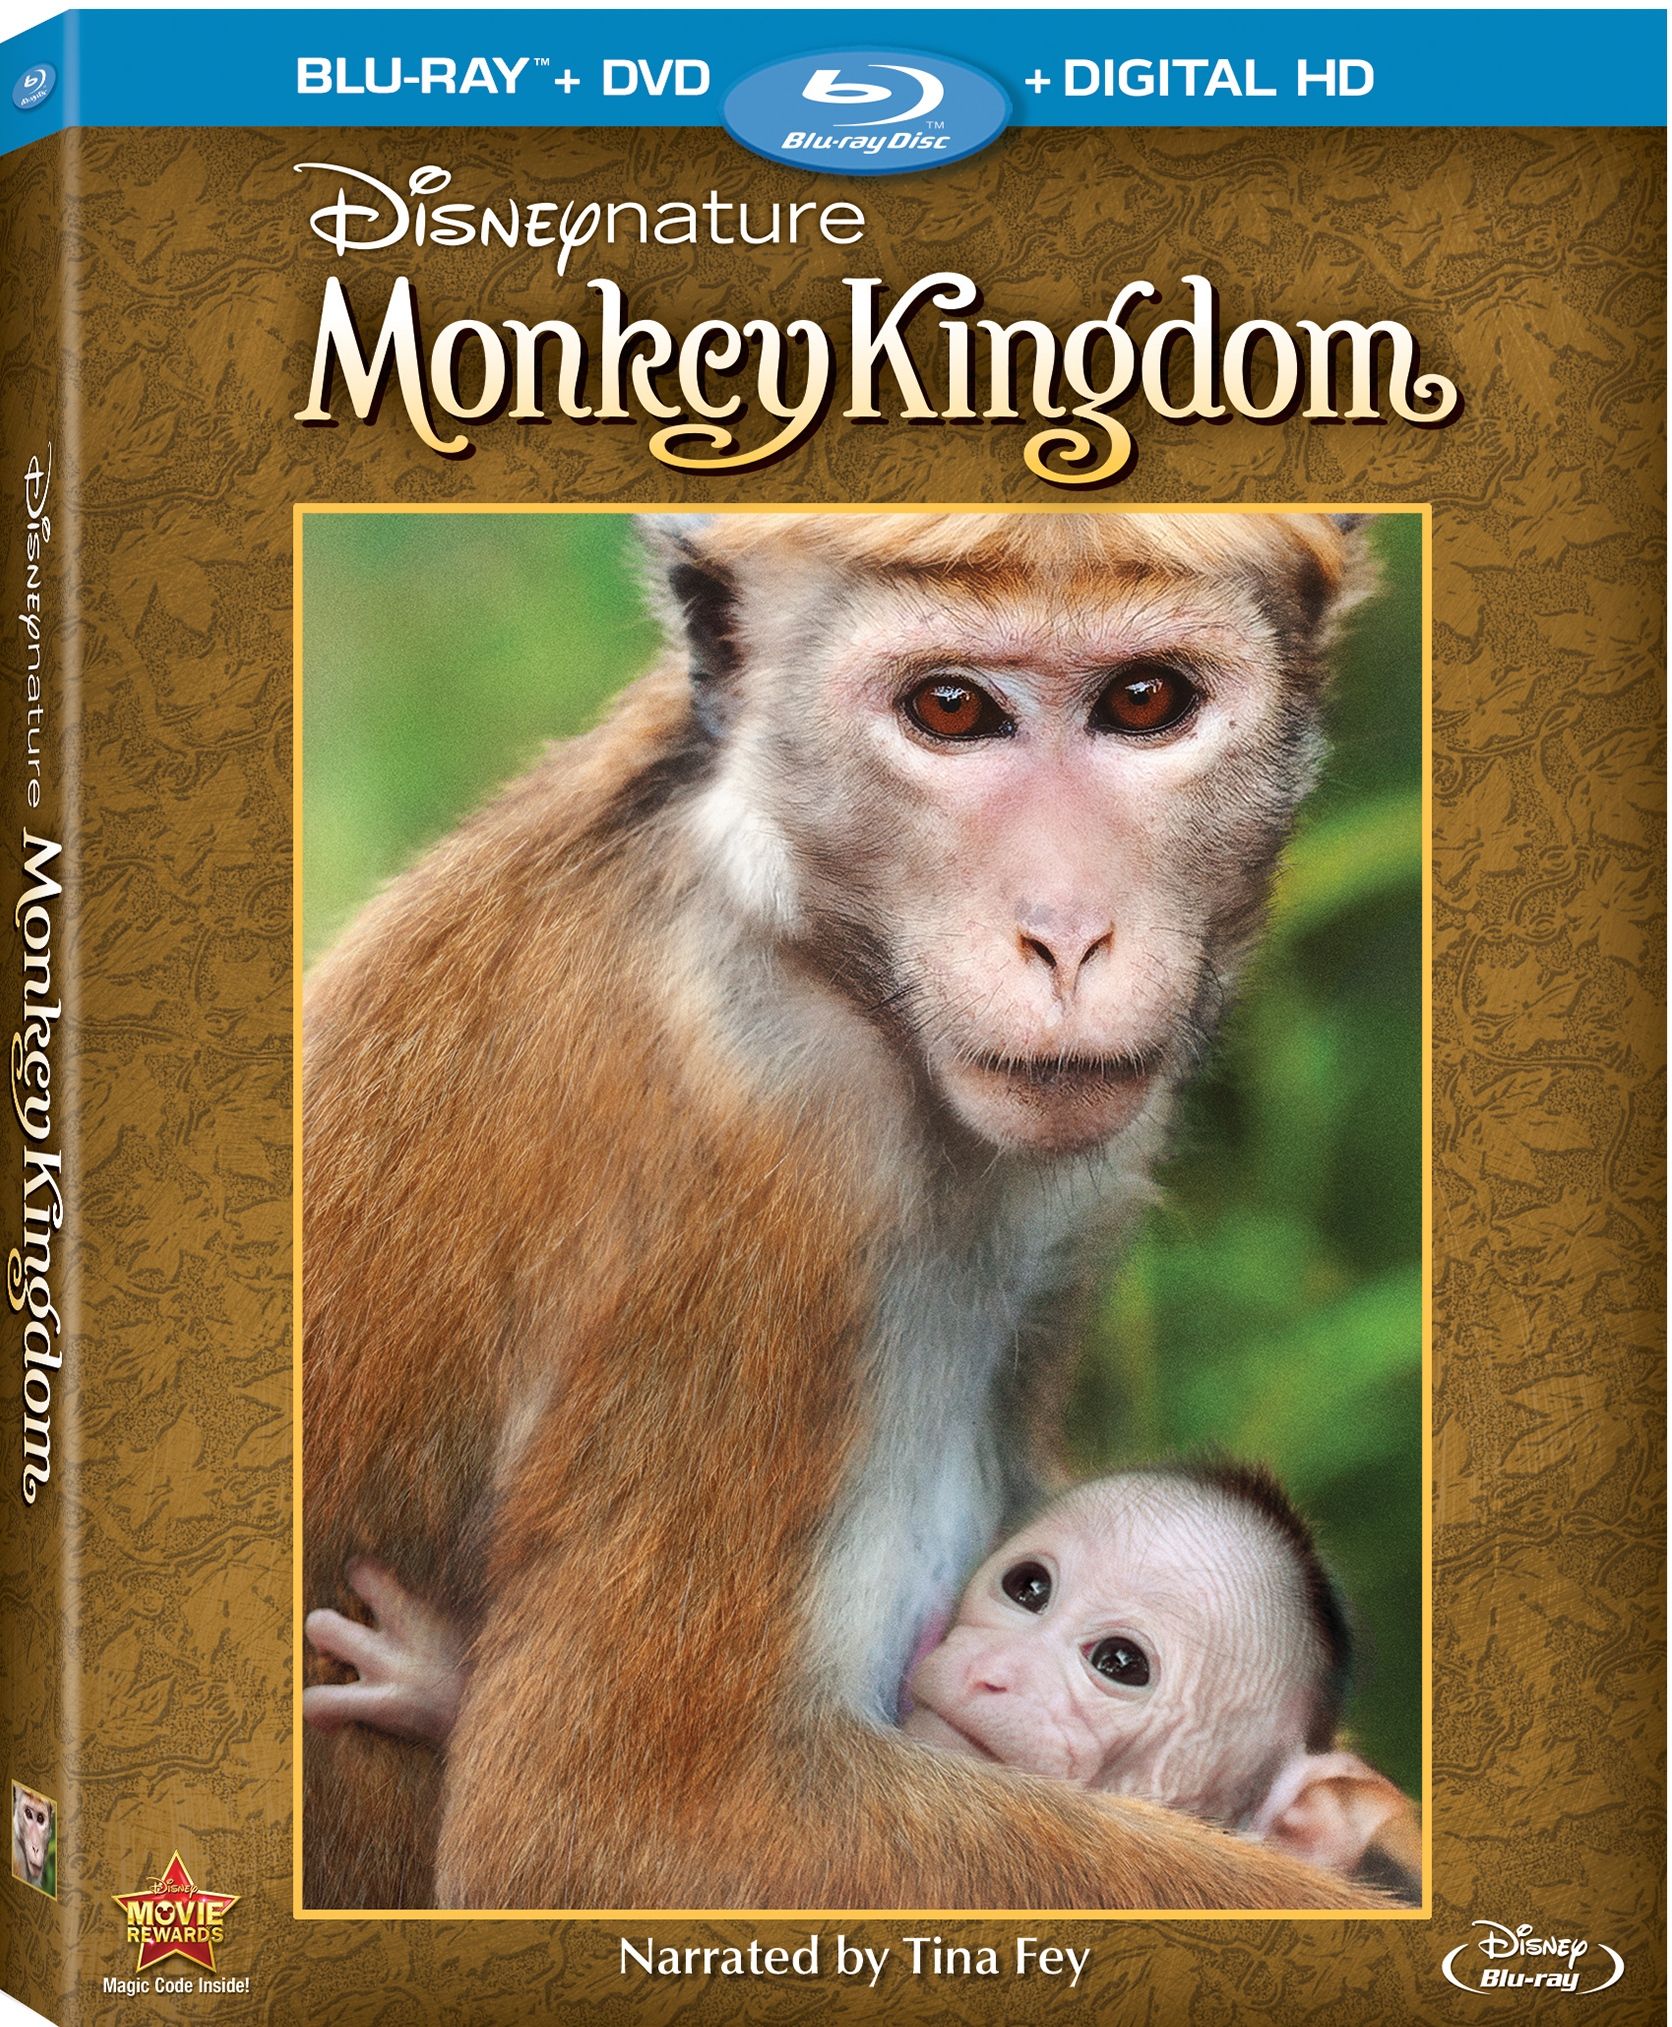 Monkey Kingdom Blu-Ray/DVD Review